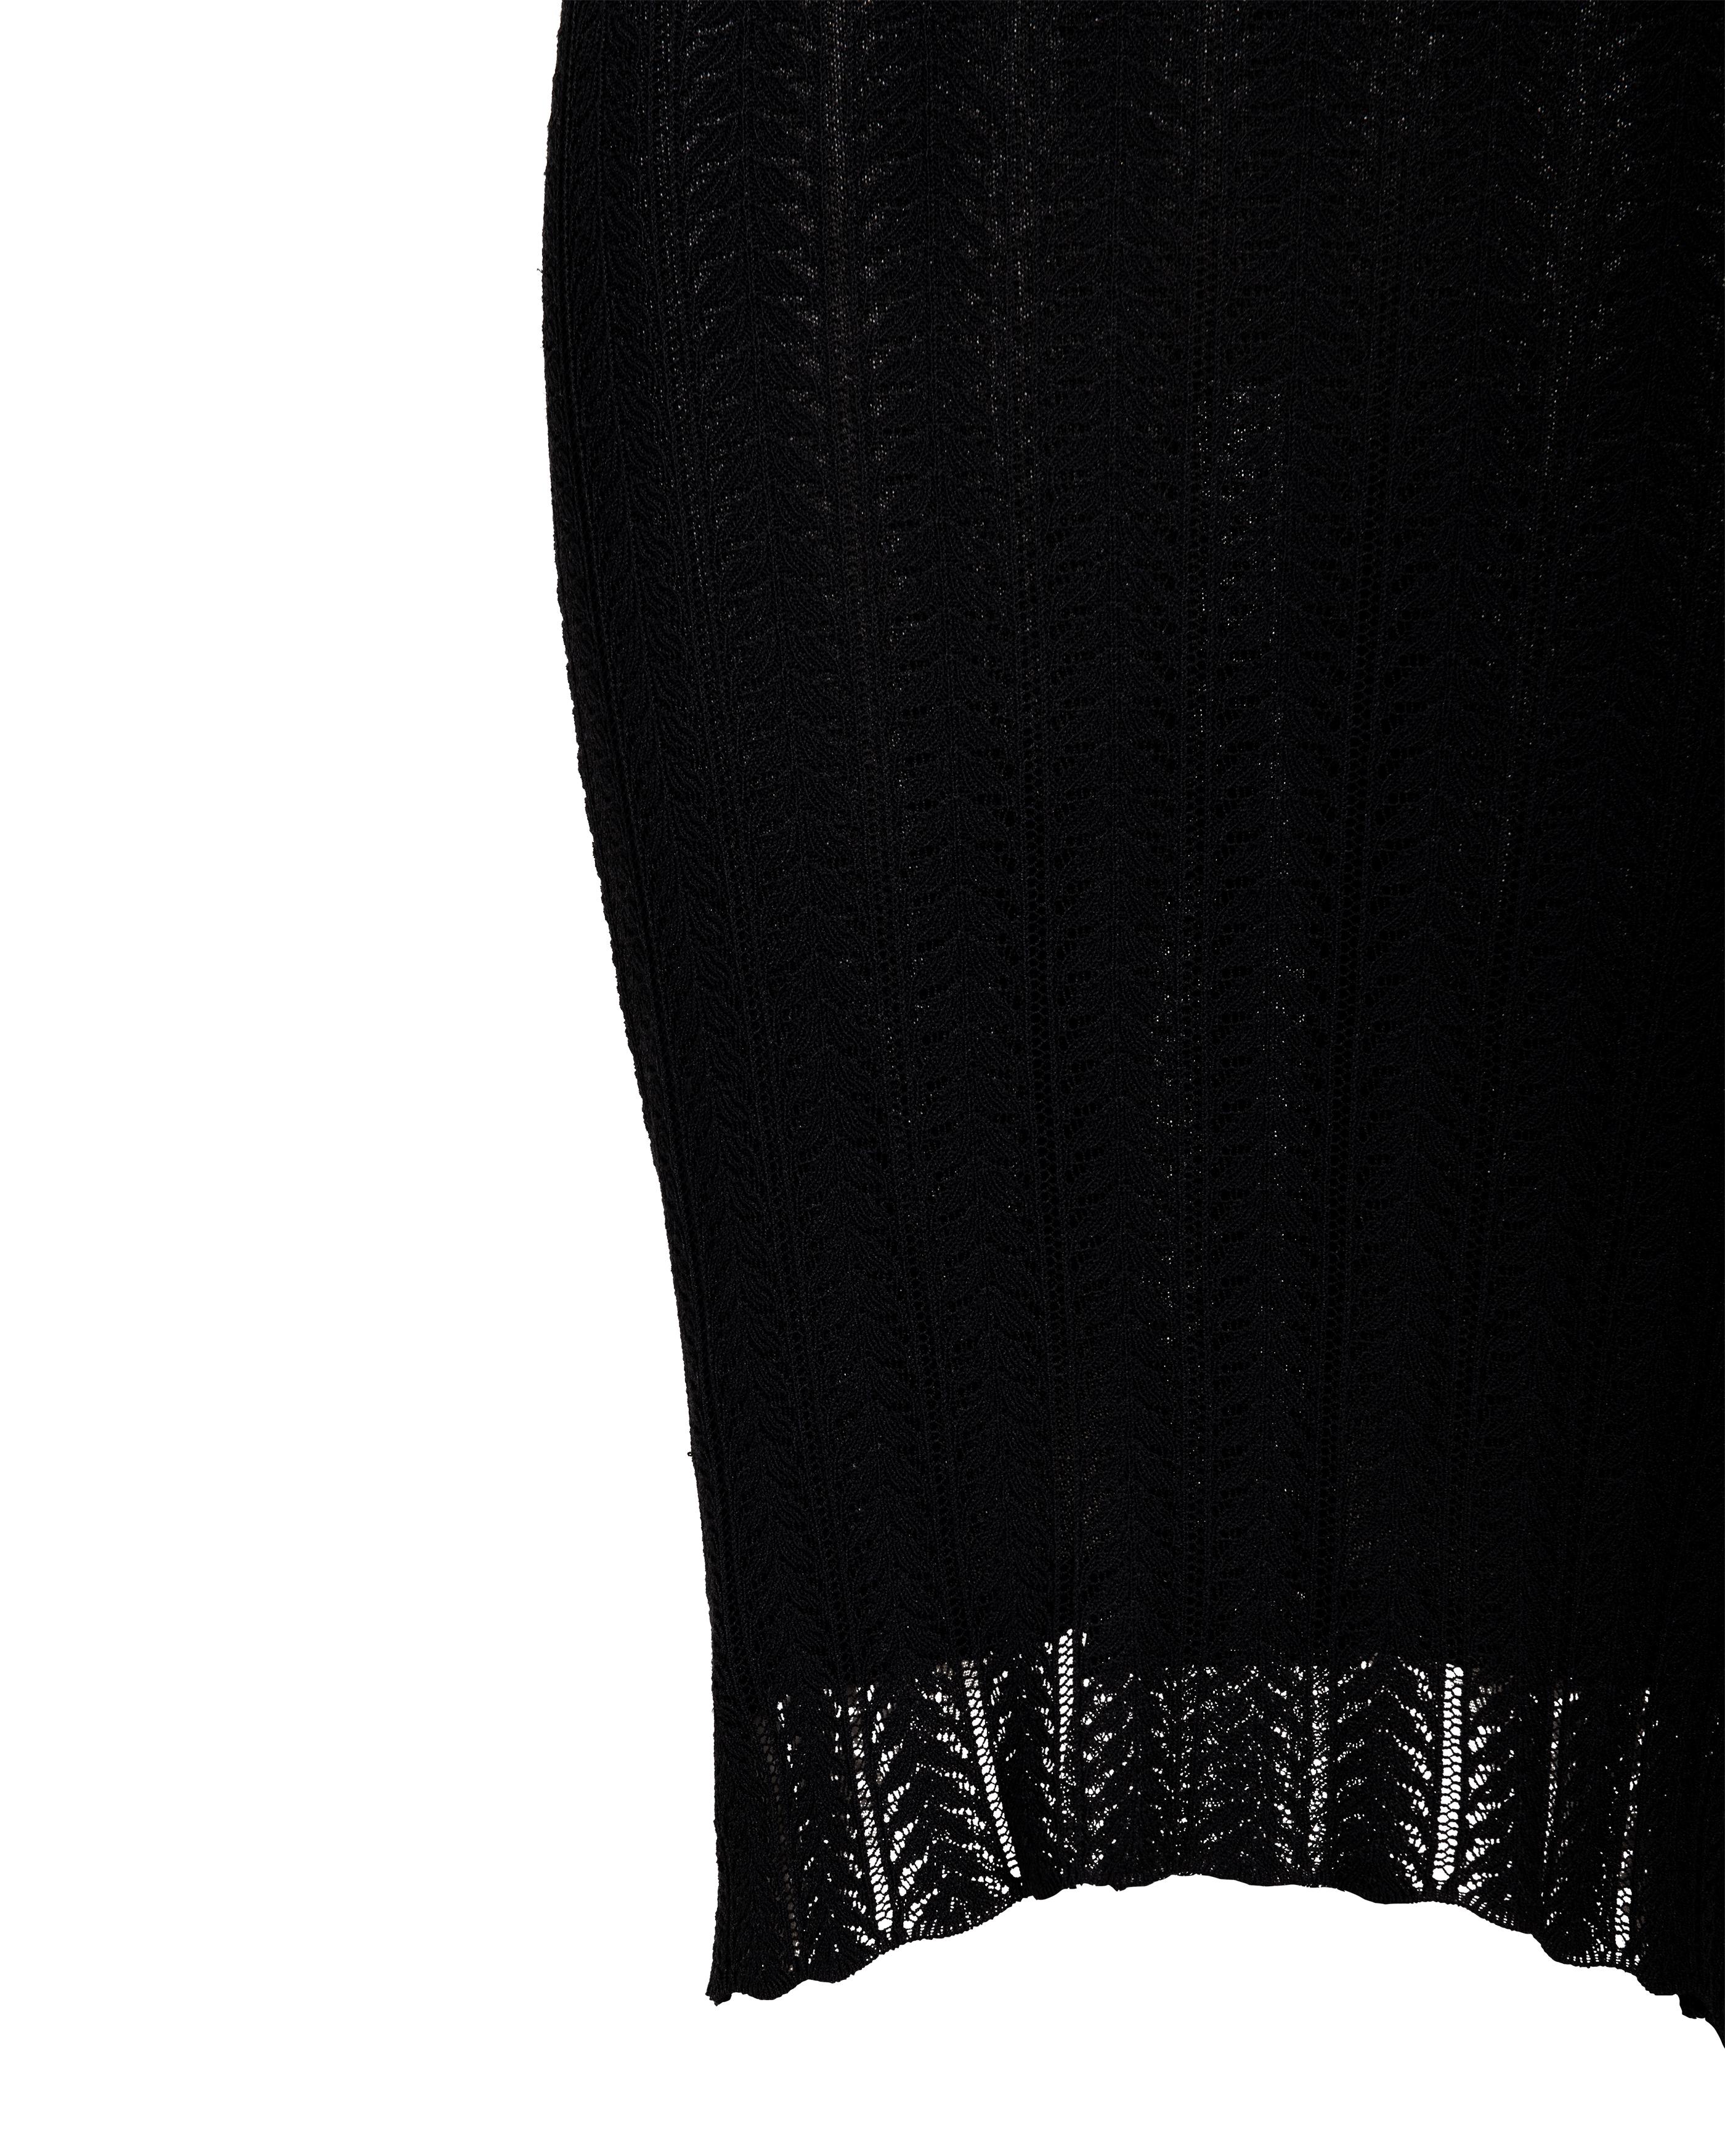 Robe-culotte John Galliano en maille ajourée noire à longueur genou, Resort 2000 en vente 3